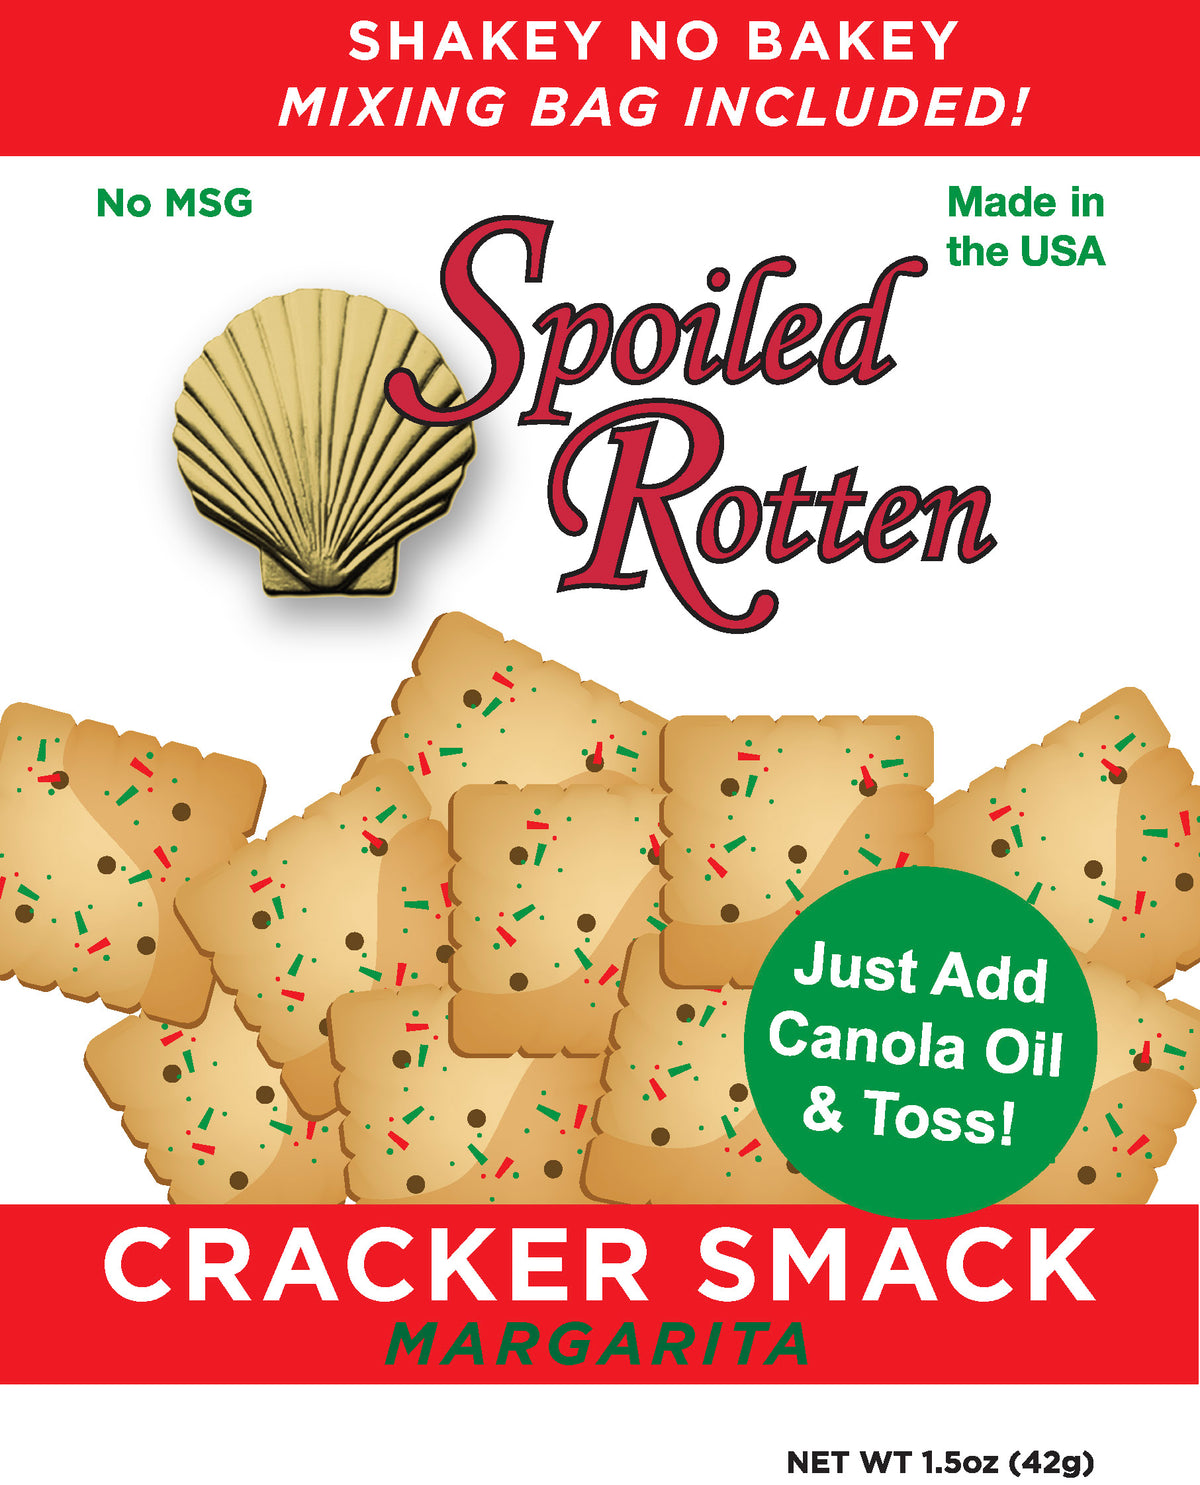 Cracker Smack Margarita